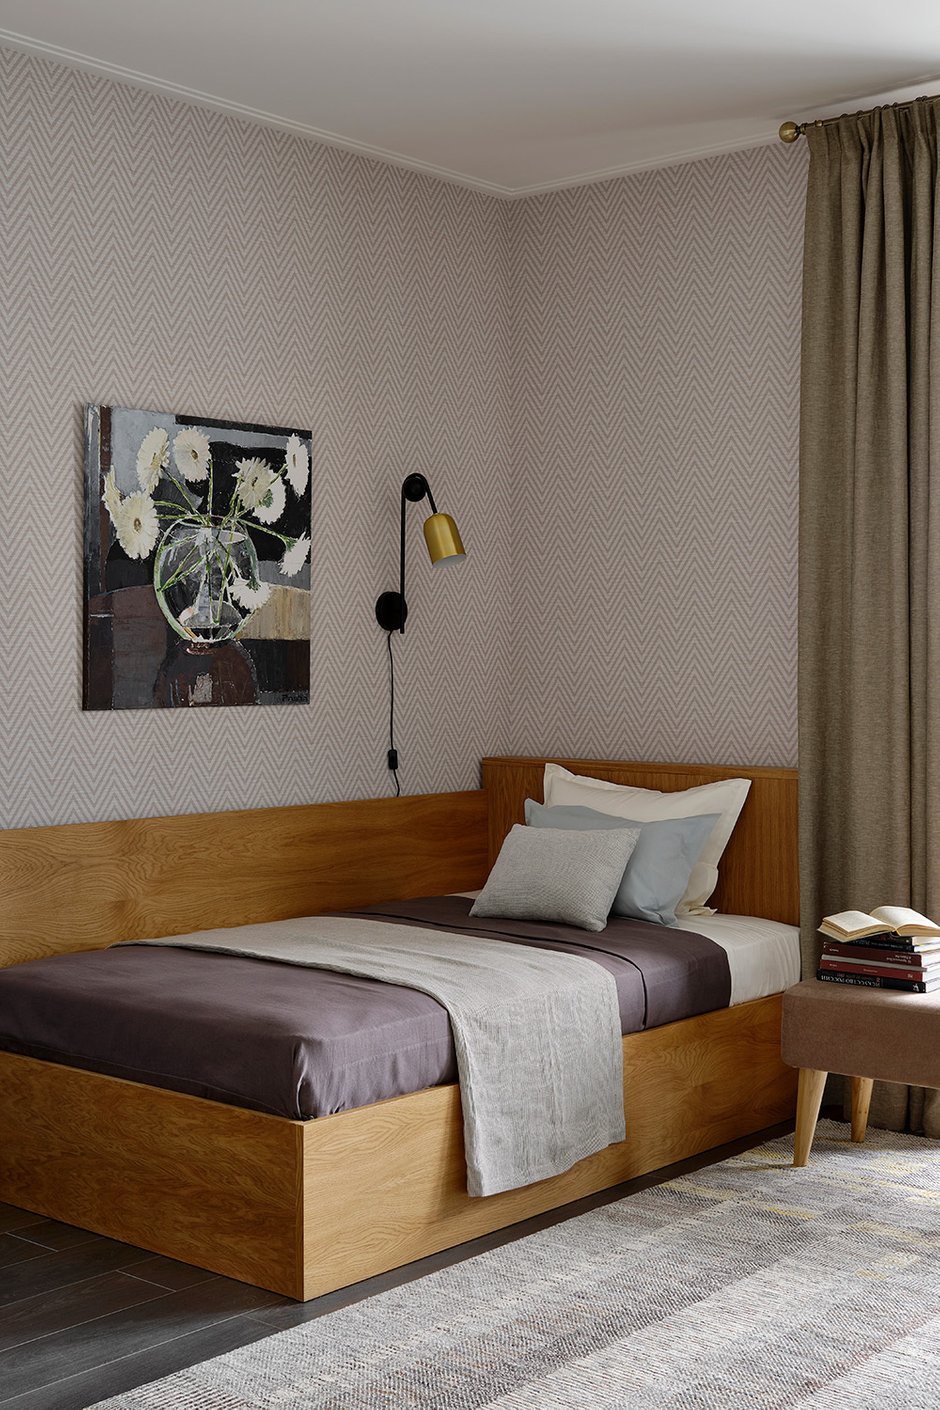 Зона вокруг кровати оформлена твидовыми обоями, что вместе с деревянной кроватью и льняными занавесками придает этой комнате уют.